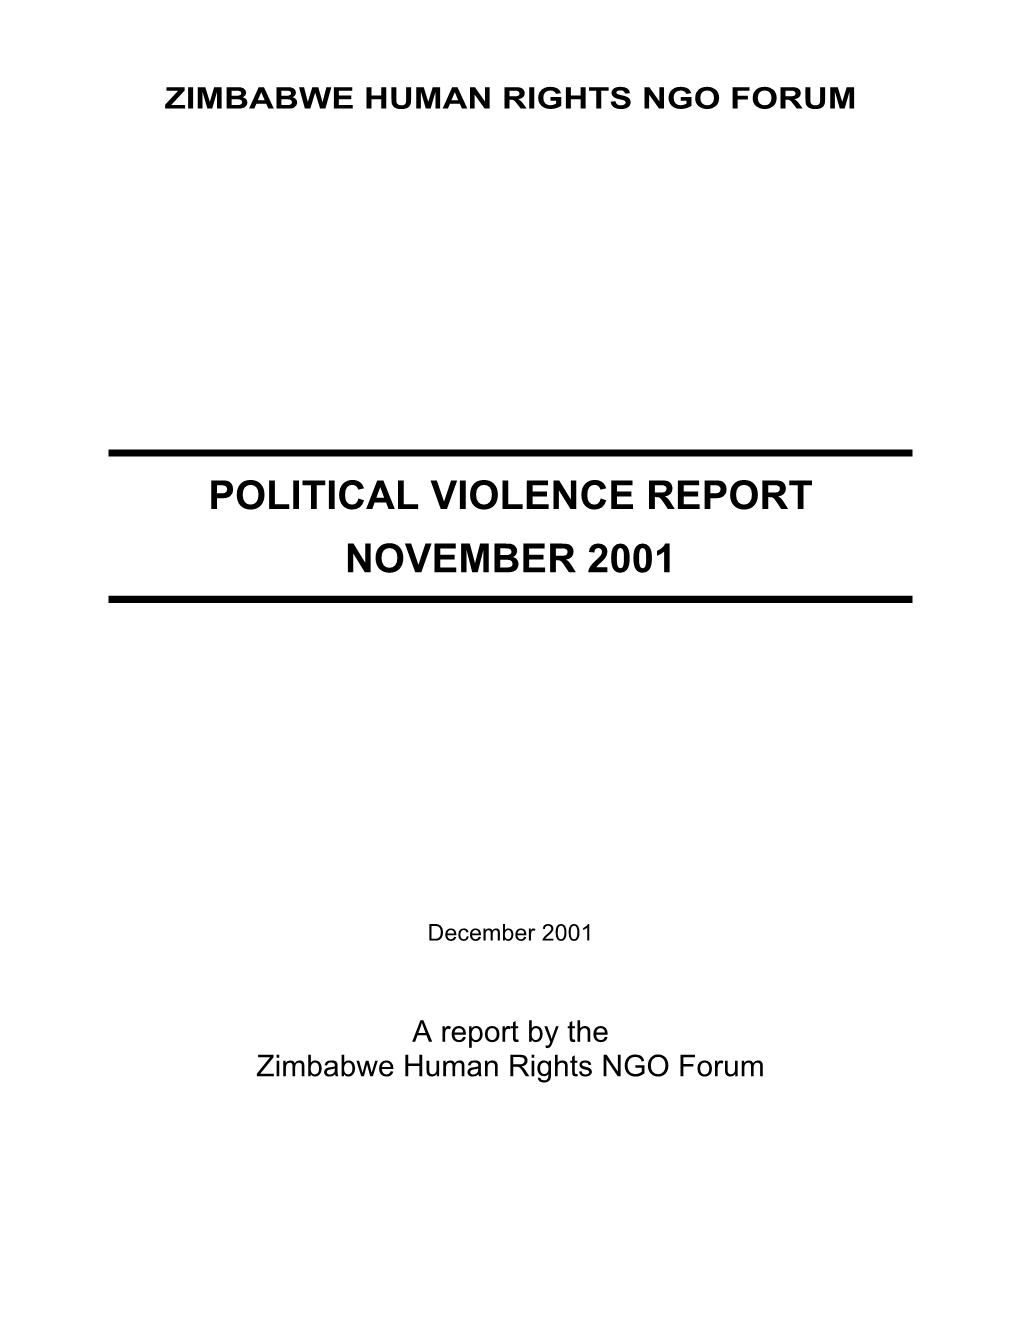 Political Violence Report November 2001